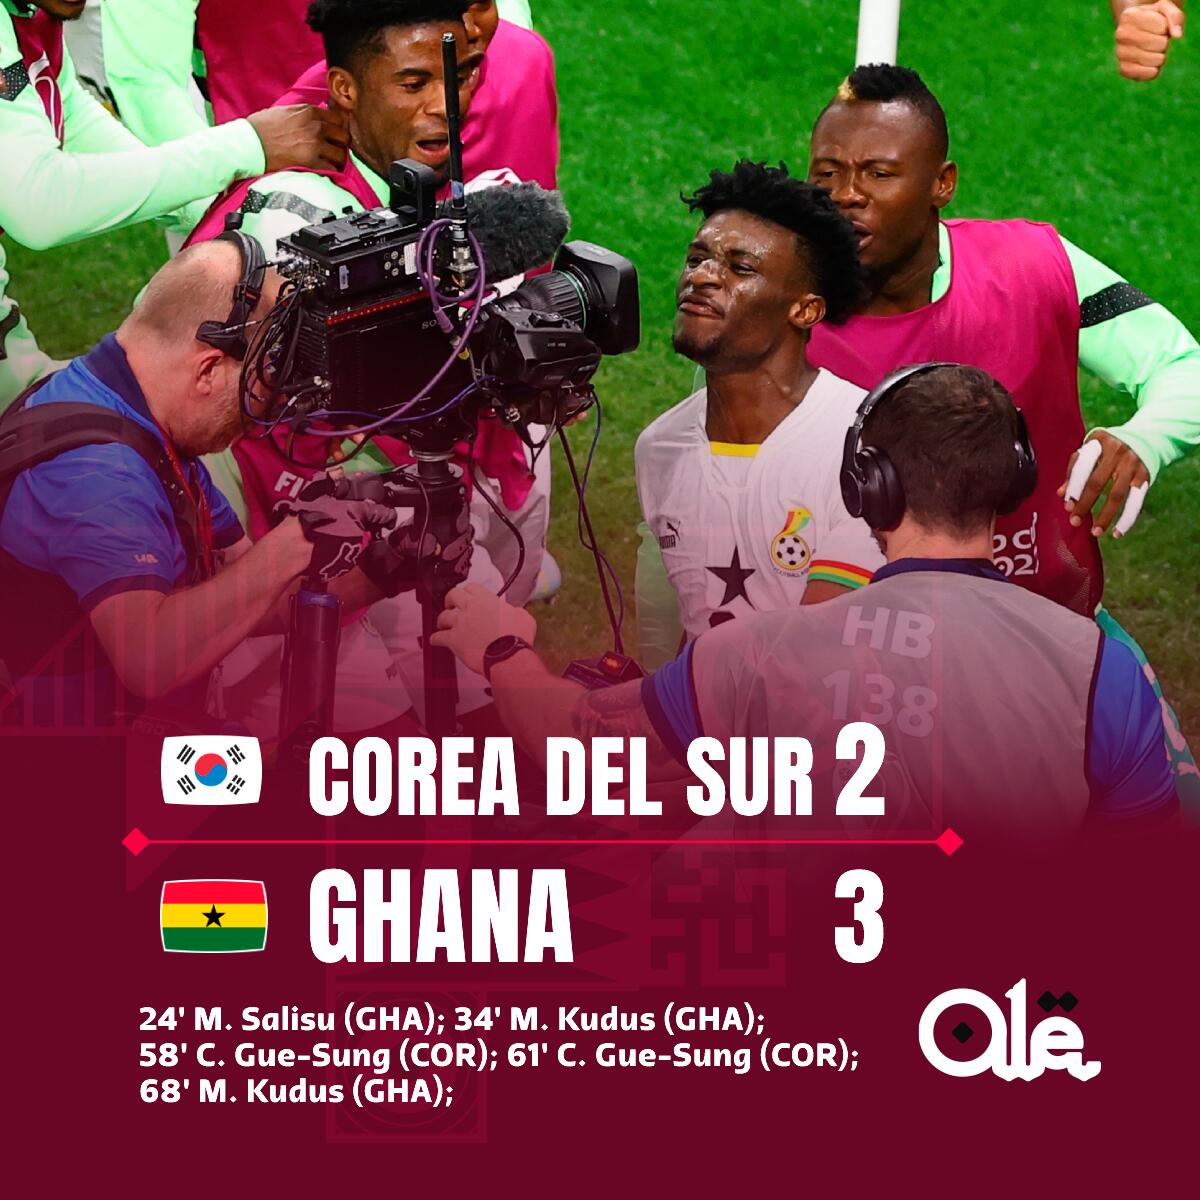 遗憾不敌加纳，韩国两球落后一度扳平比分！吧友们作何评价？